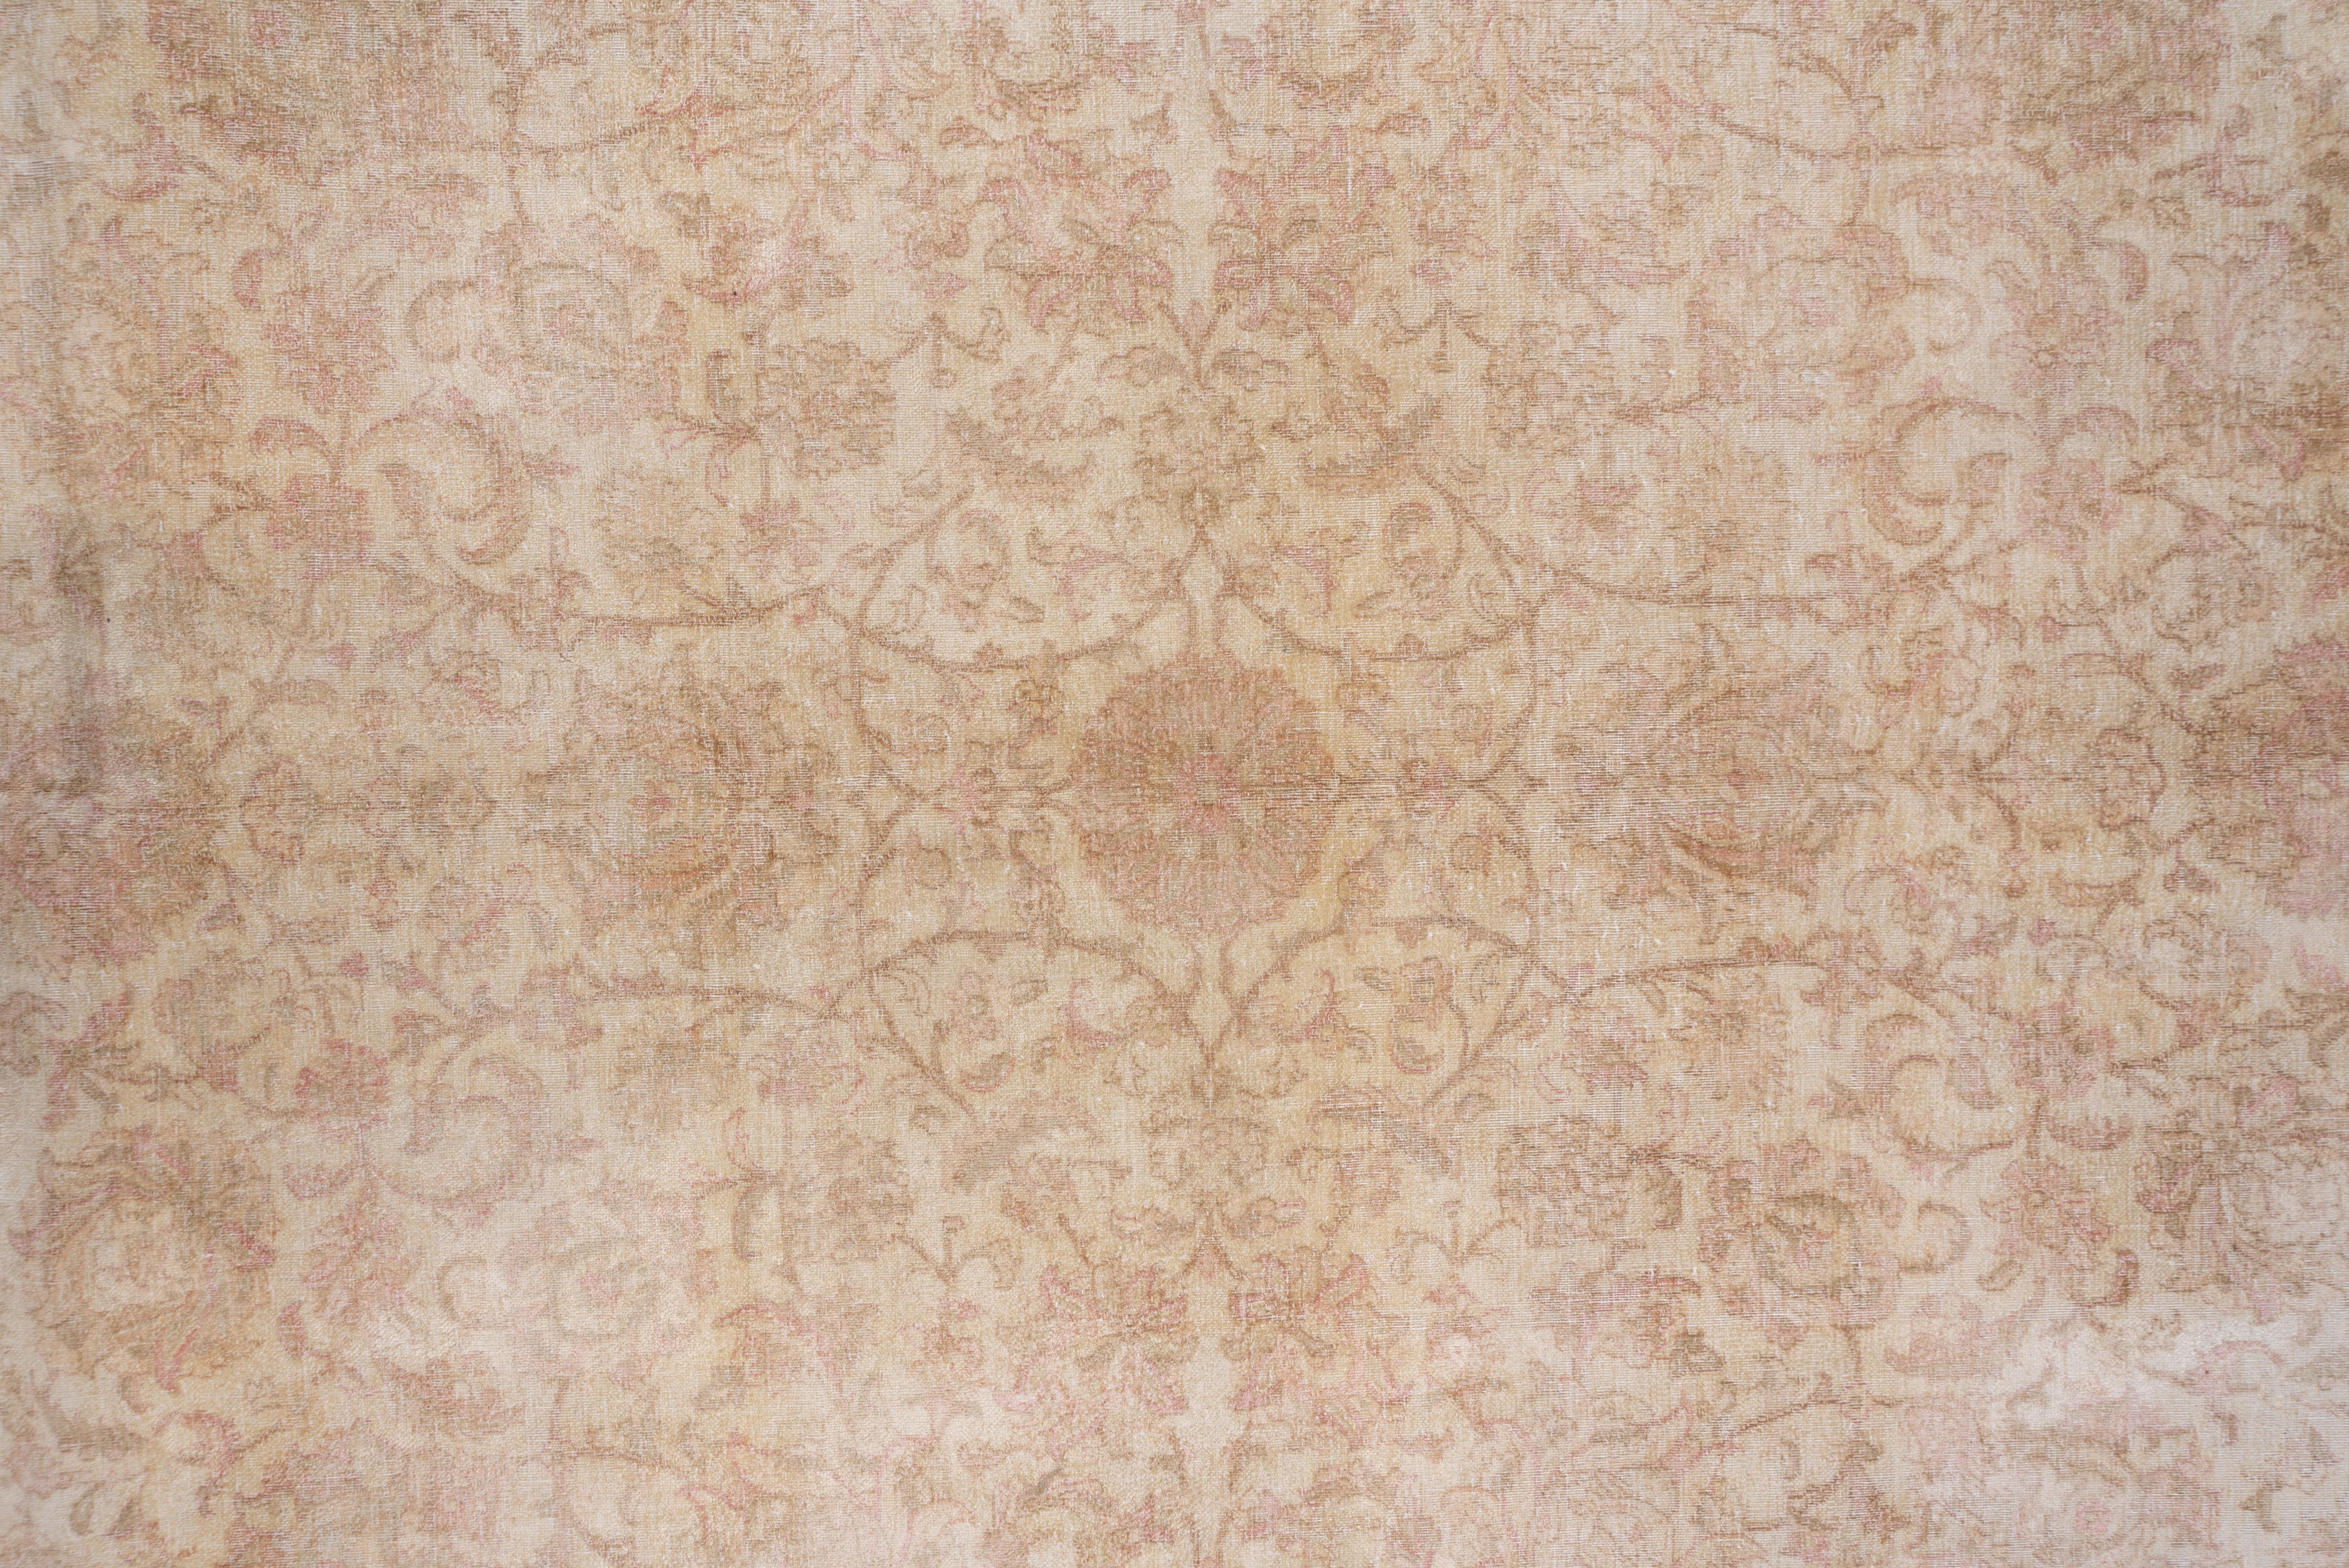 Mid-20th Century Antique Urban Silk Turkish Hereke Carpet, Pink Accents, Neutral Palette